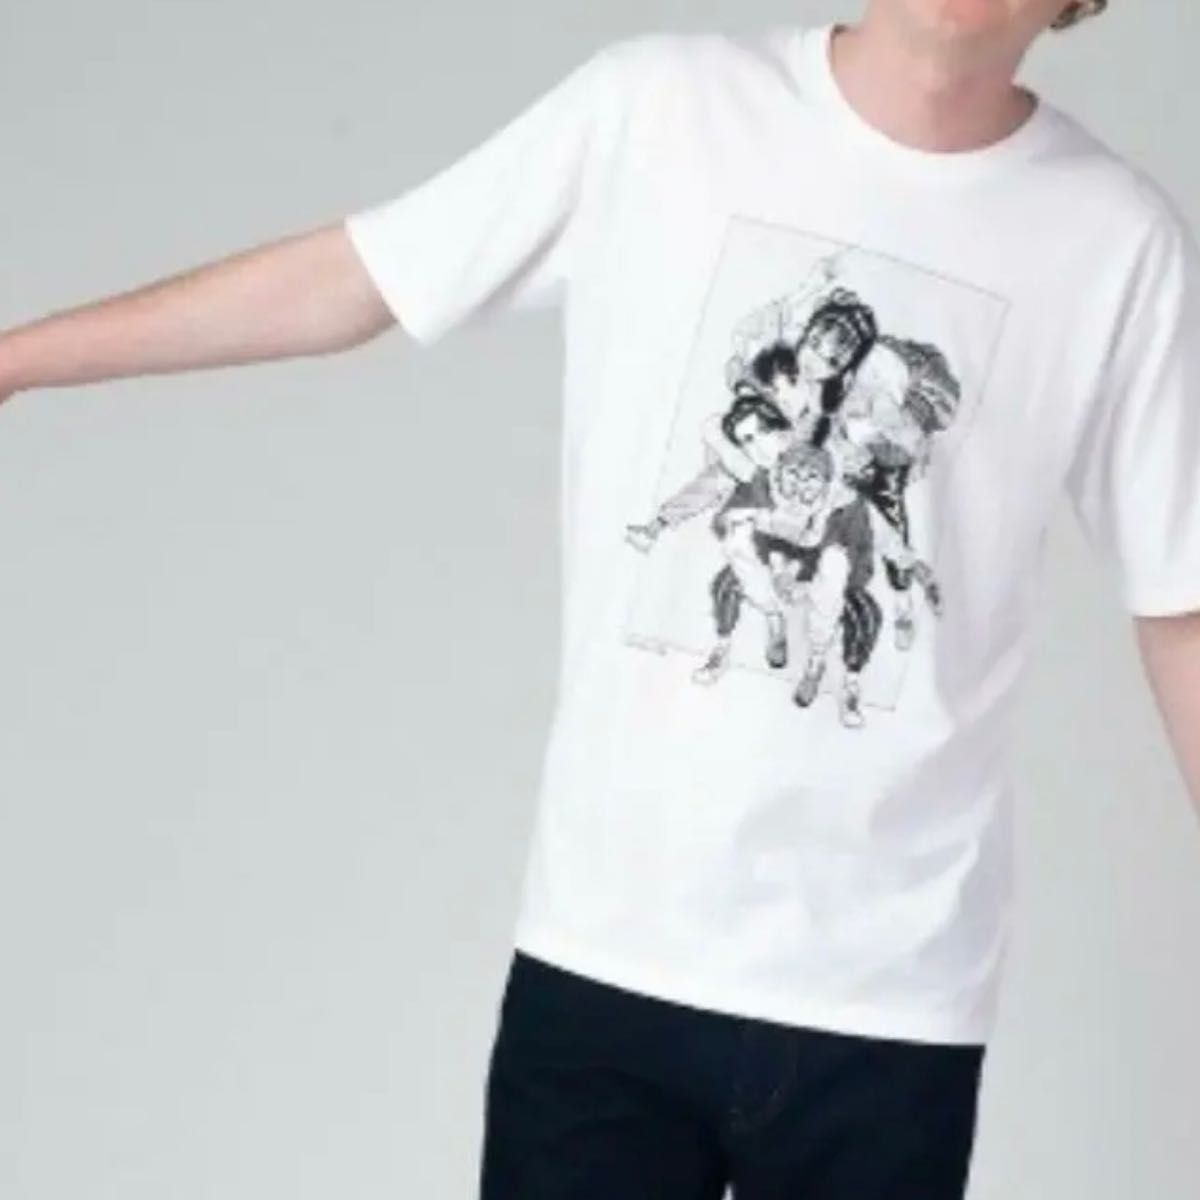 【新品未使用】ツルモク独身寮 ビッグコミックスピリッツ40周年 コラボTシャツ Lサイズ